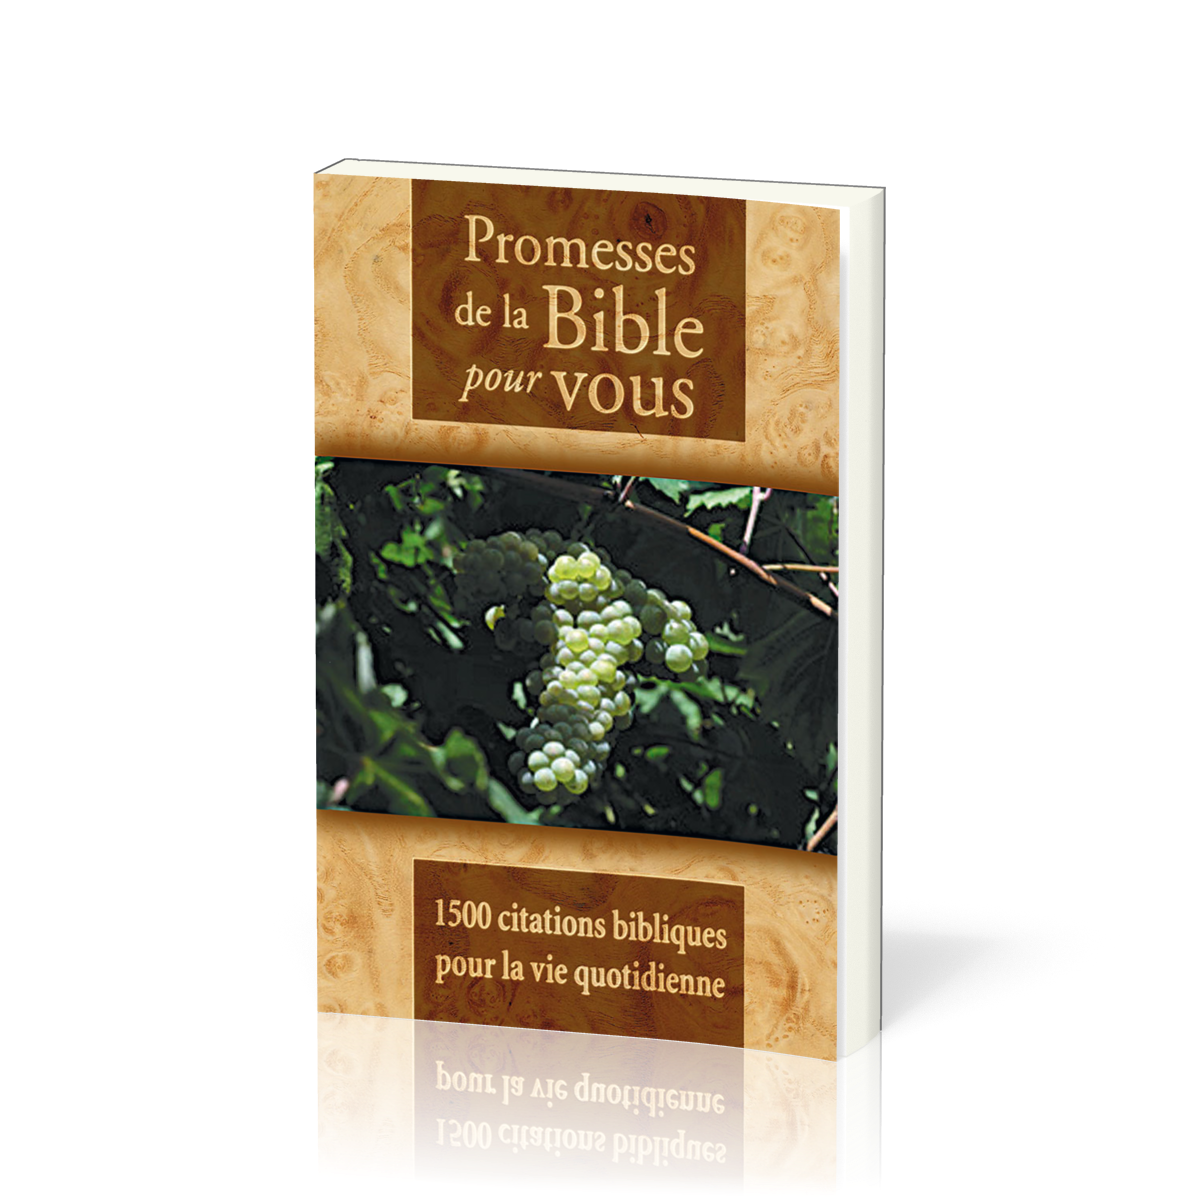 Promesses de la Bible pour vous - 1500 citations bibliques pour la vie quotidienne